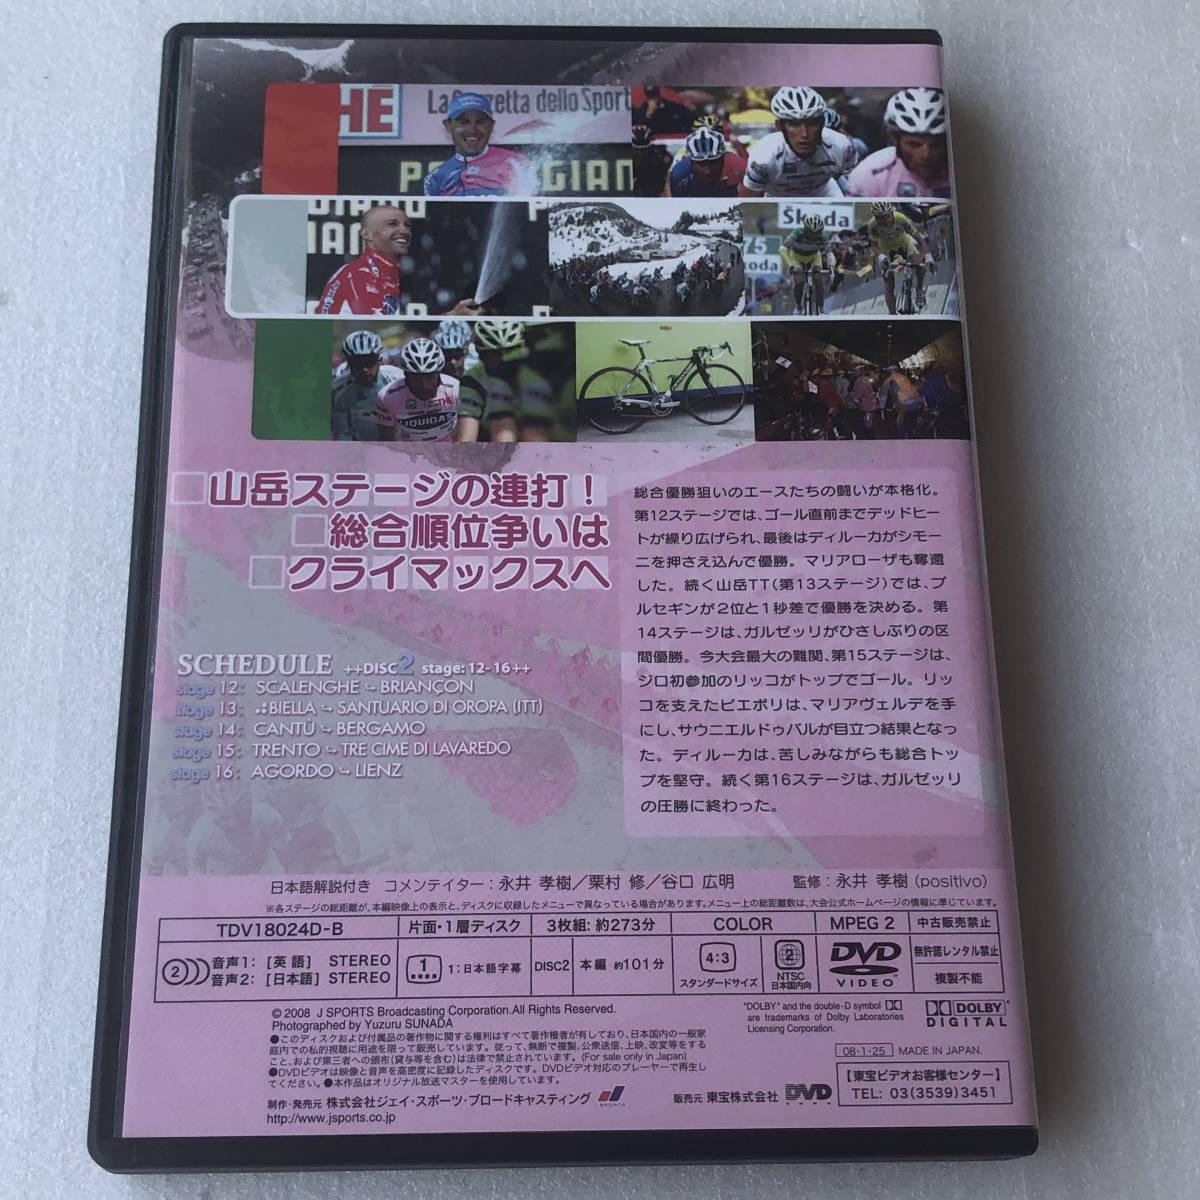  used DVD Giro d\'Italiajiro*te* Italy 2007 special BOX 3 sheets set TDV18024D free shipping 